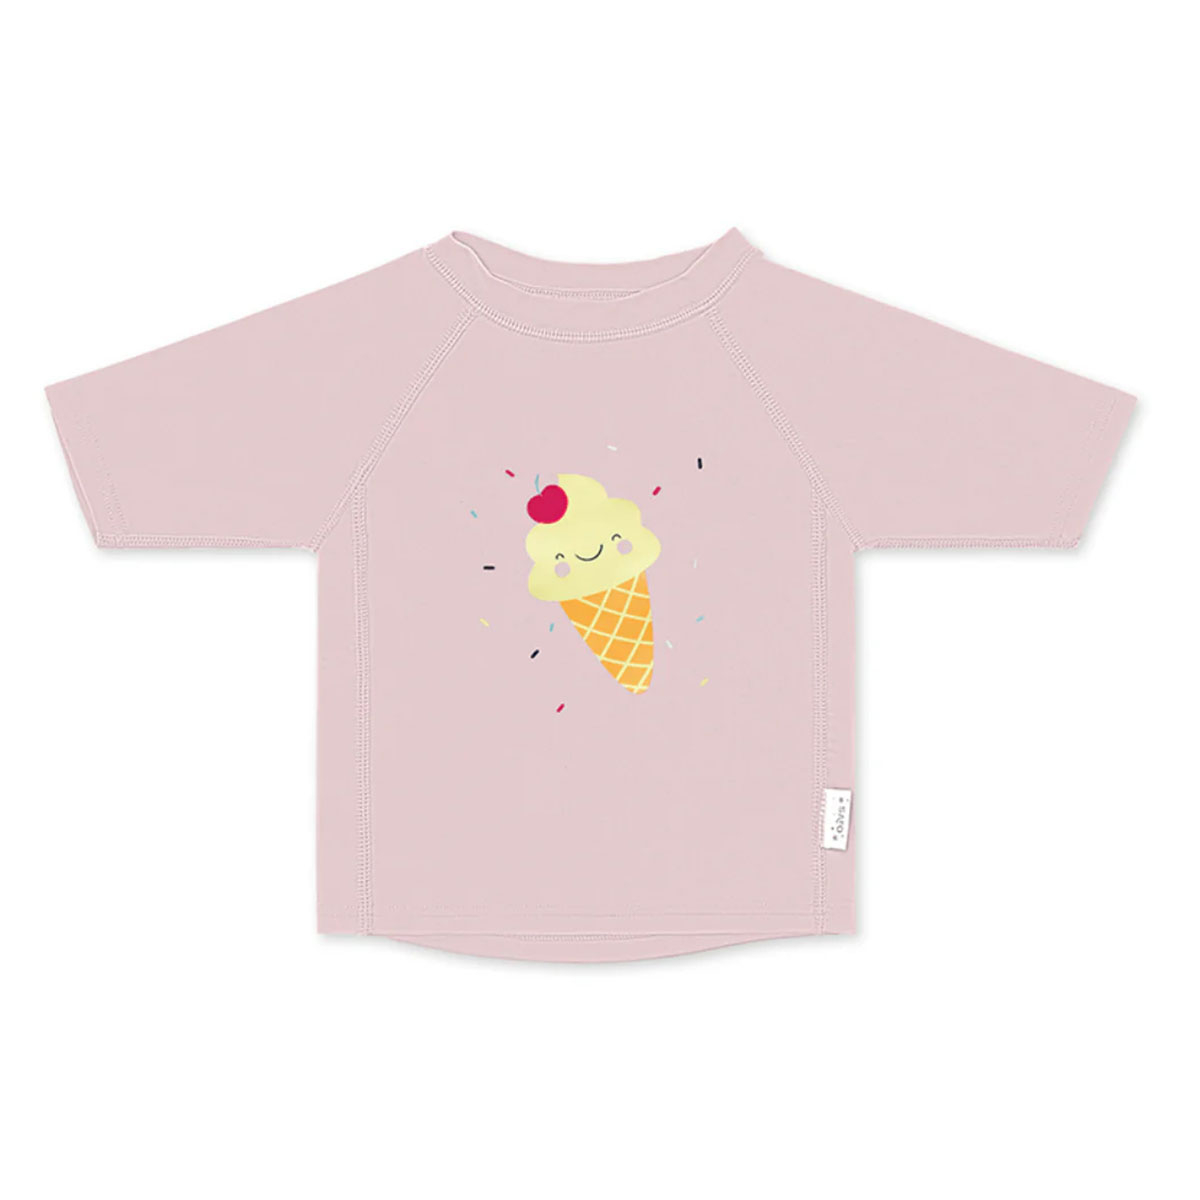 Παιδική Μπλούζα Με Αντηλιακή Προστασία Saro Ice Creams 6-9 Μηνών 6-9 Μηνών